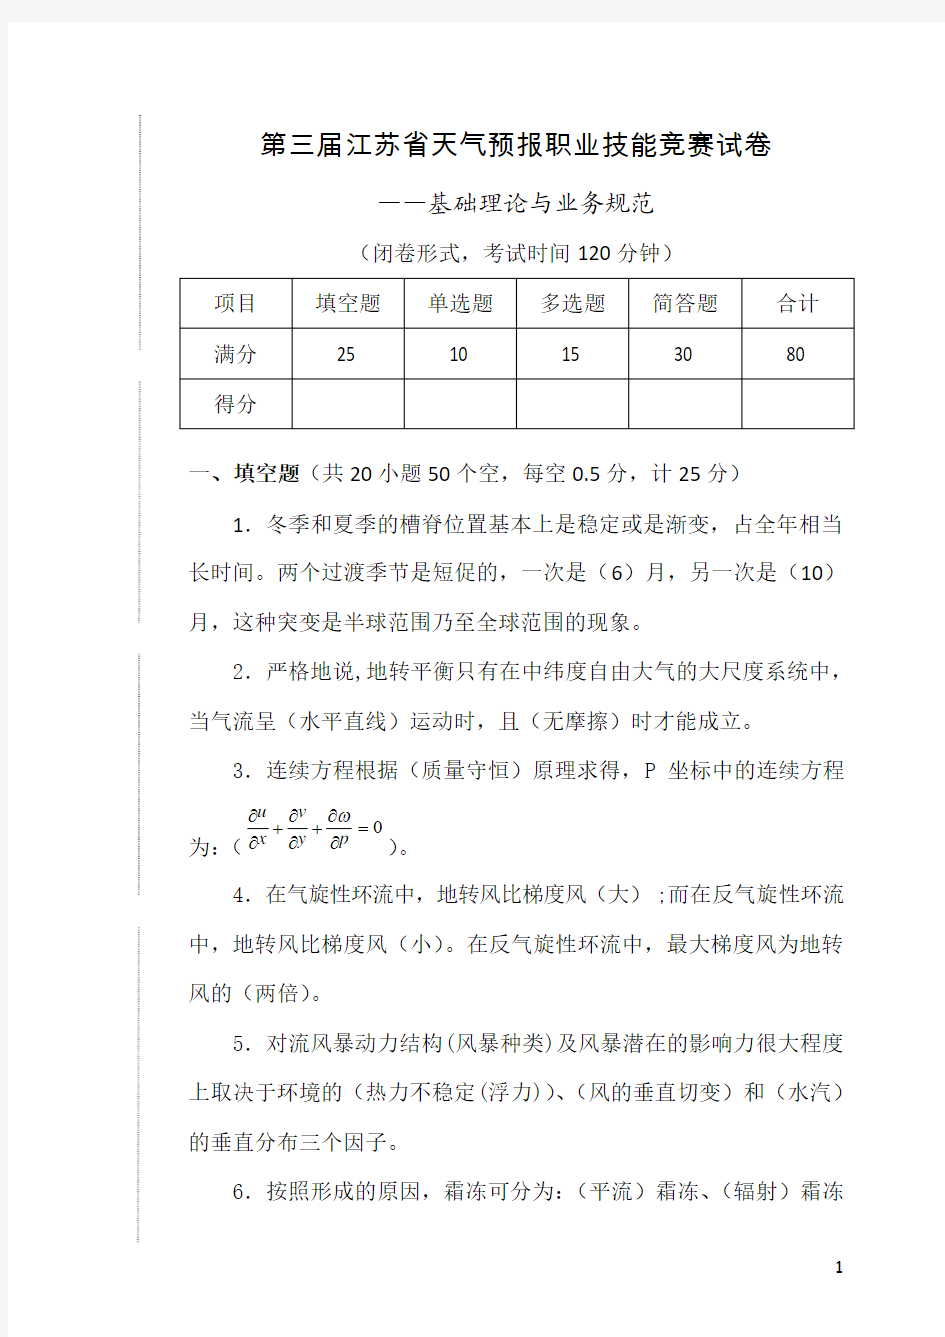 第三届江苏省天气预报职业技能竞赛理论知识与业务规范试卷答案